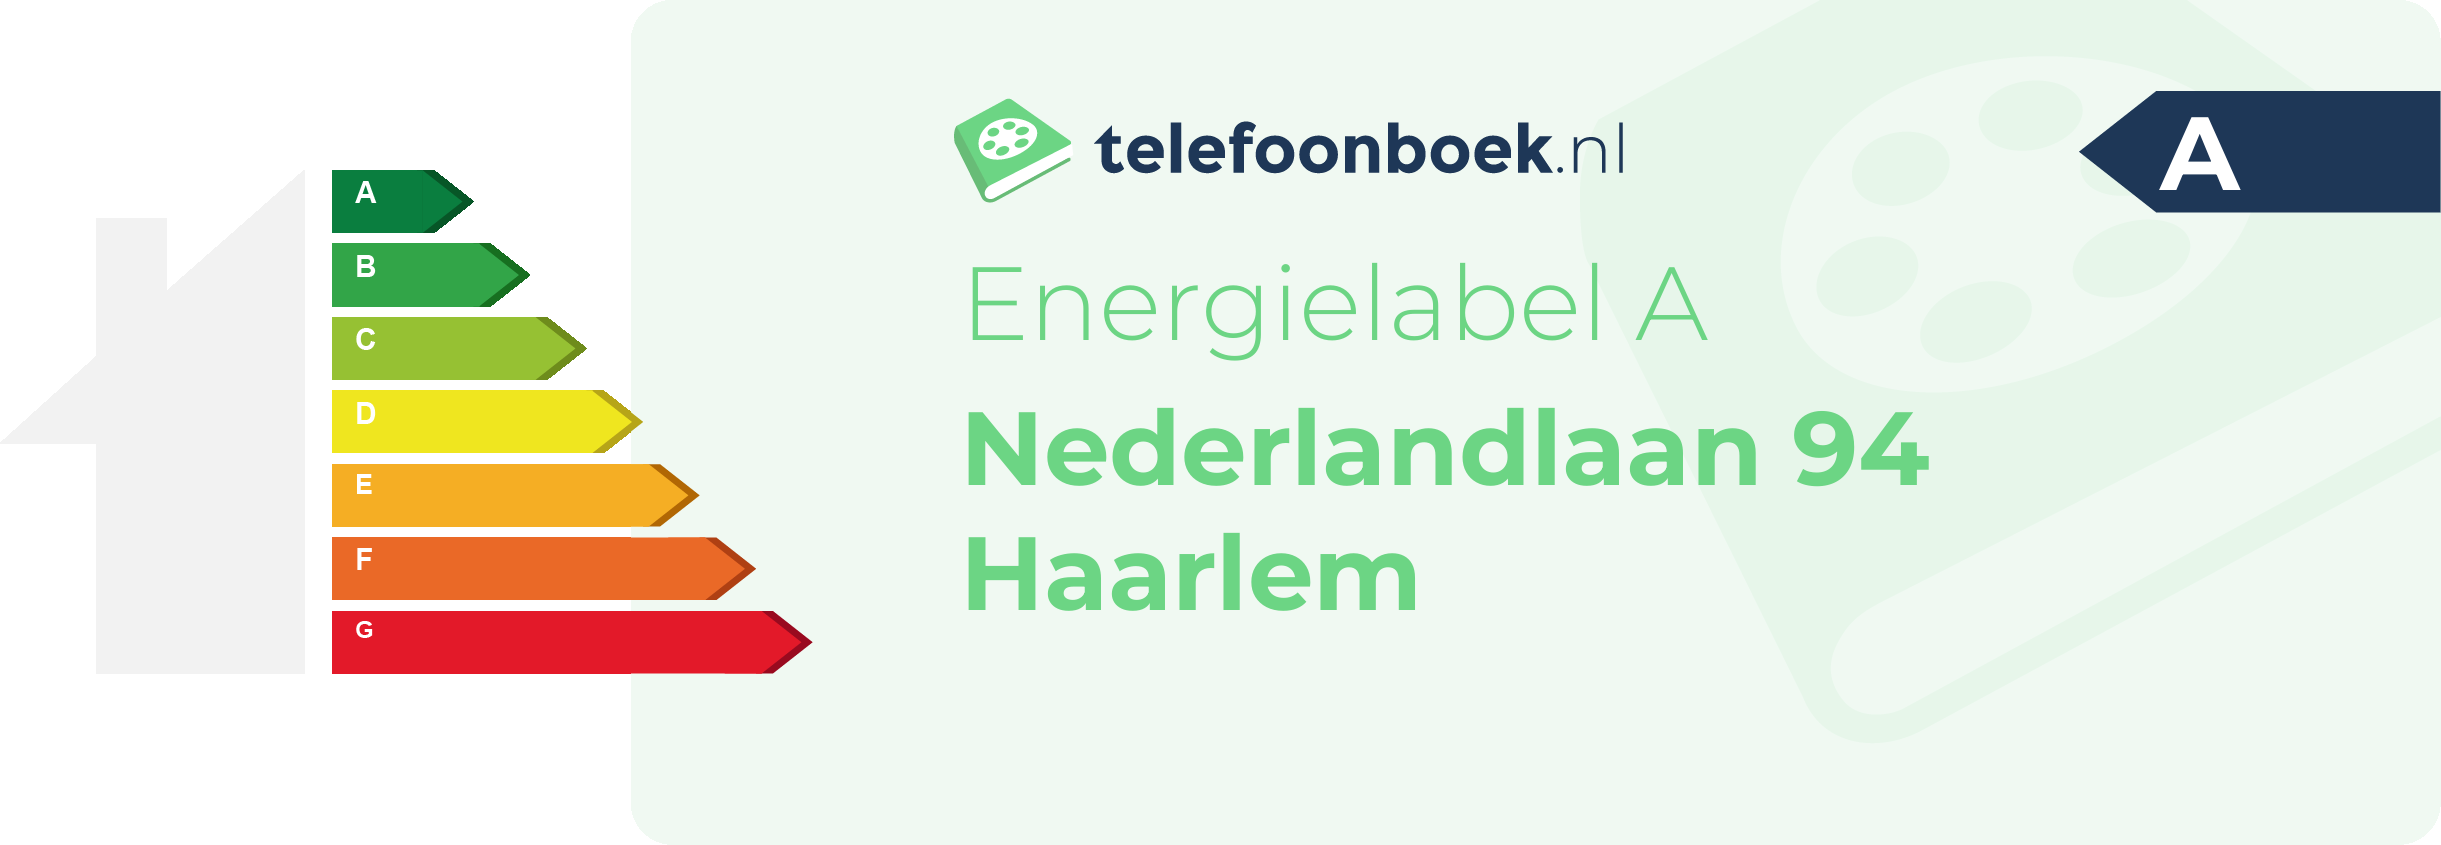 Energielabel Nederlandlaan 94 Haarlem